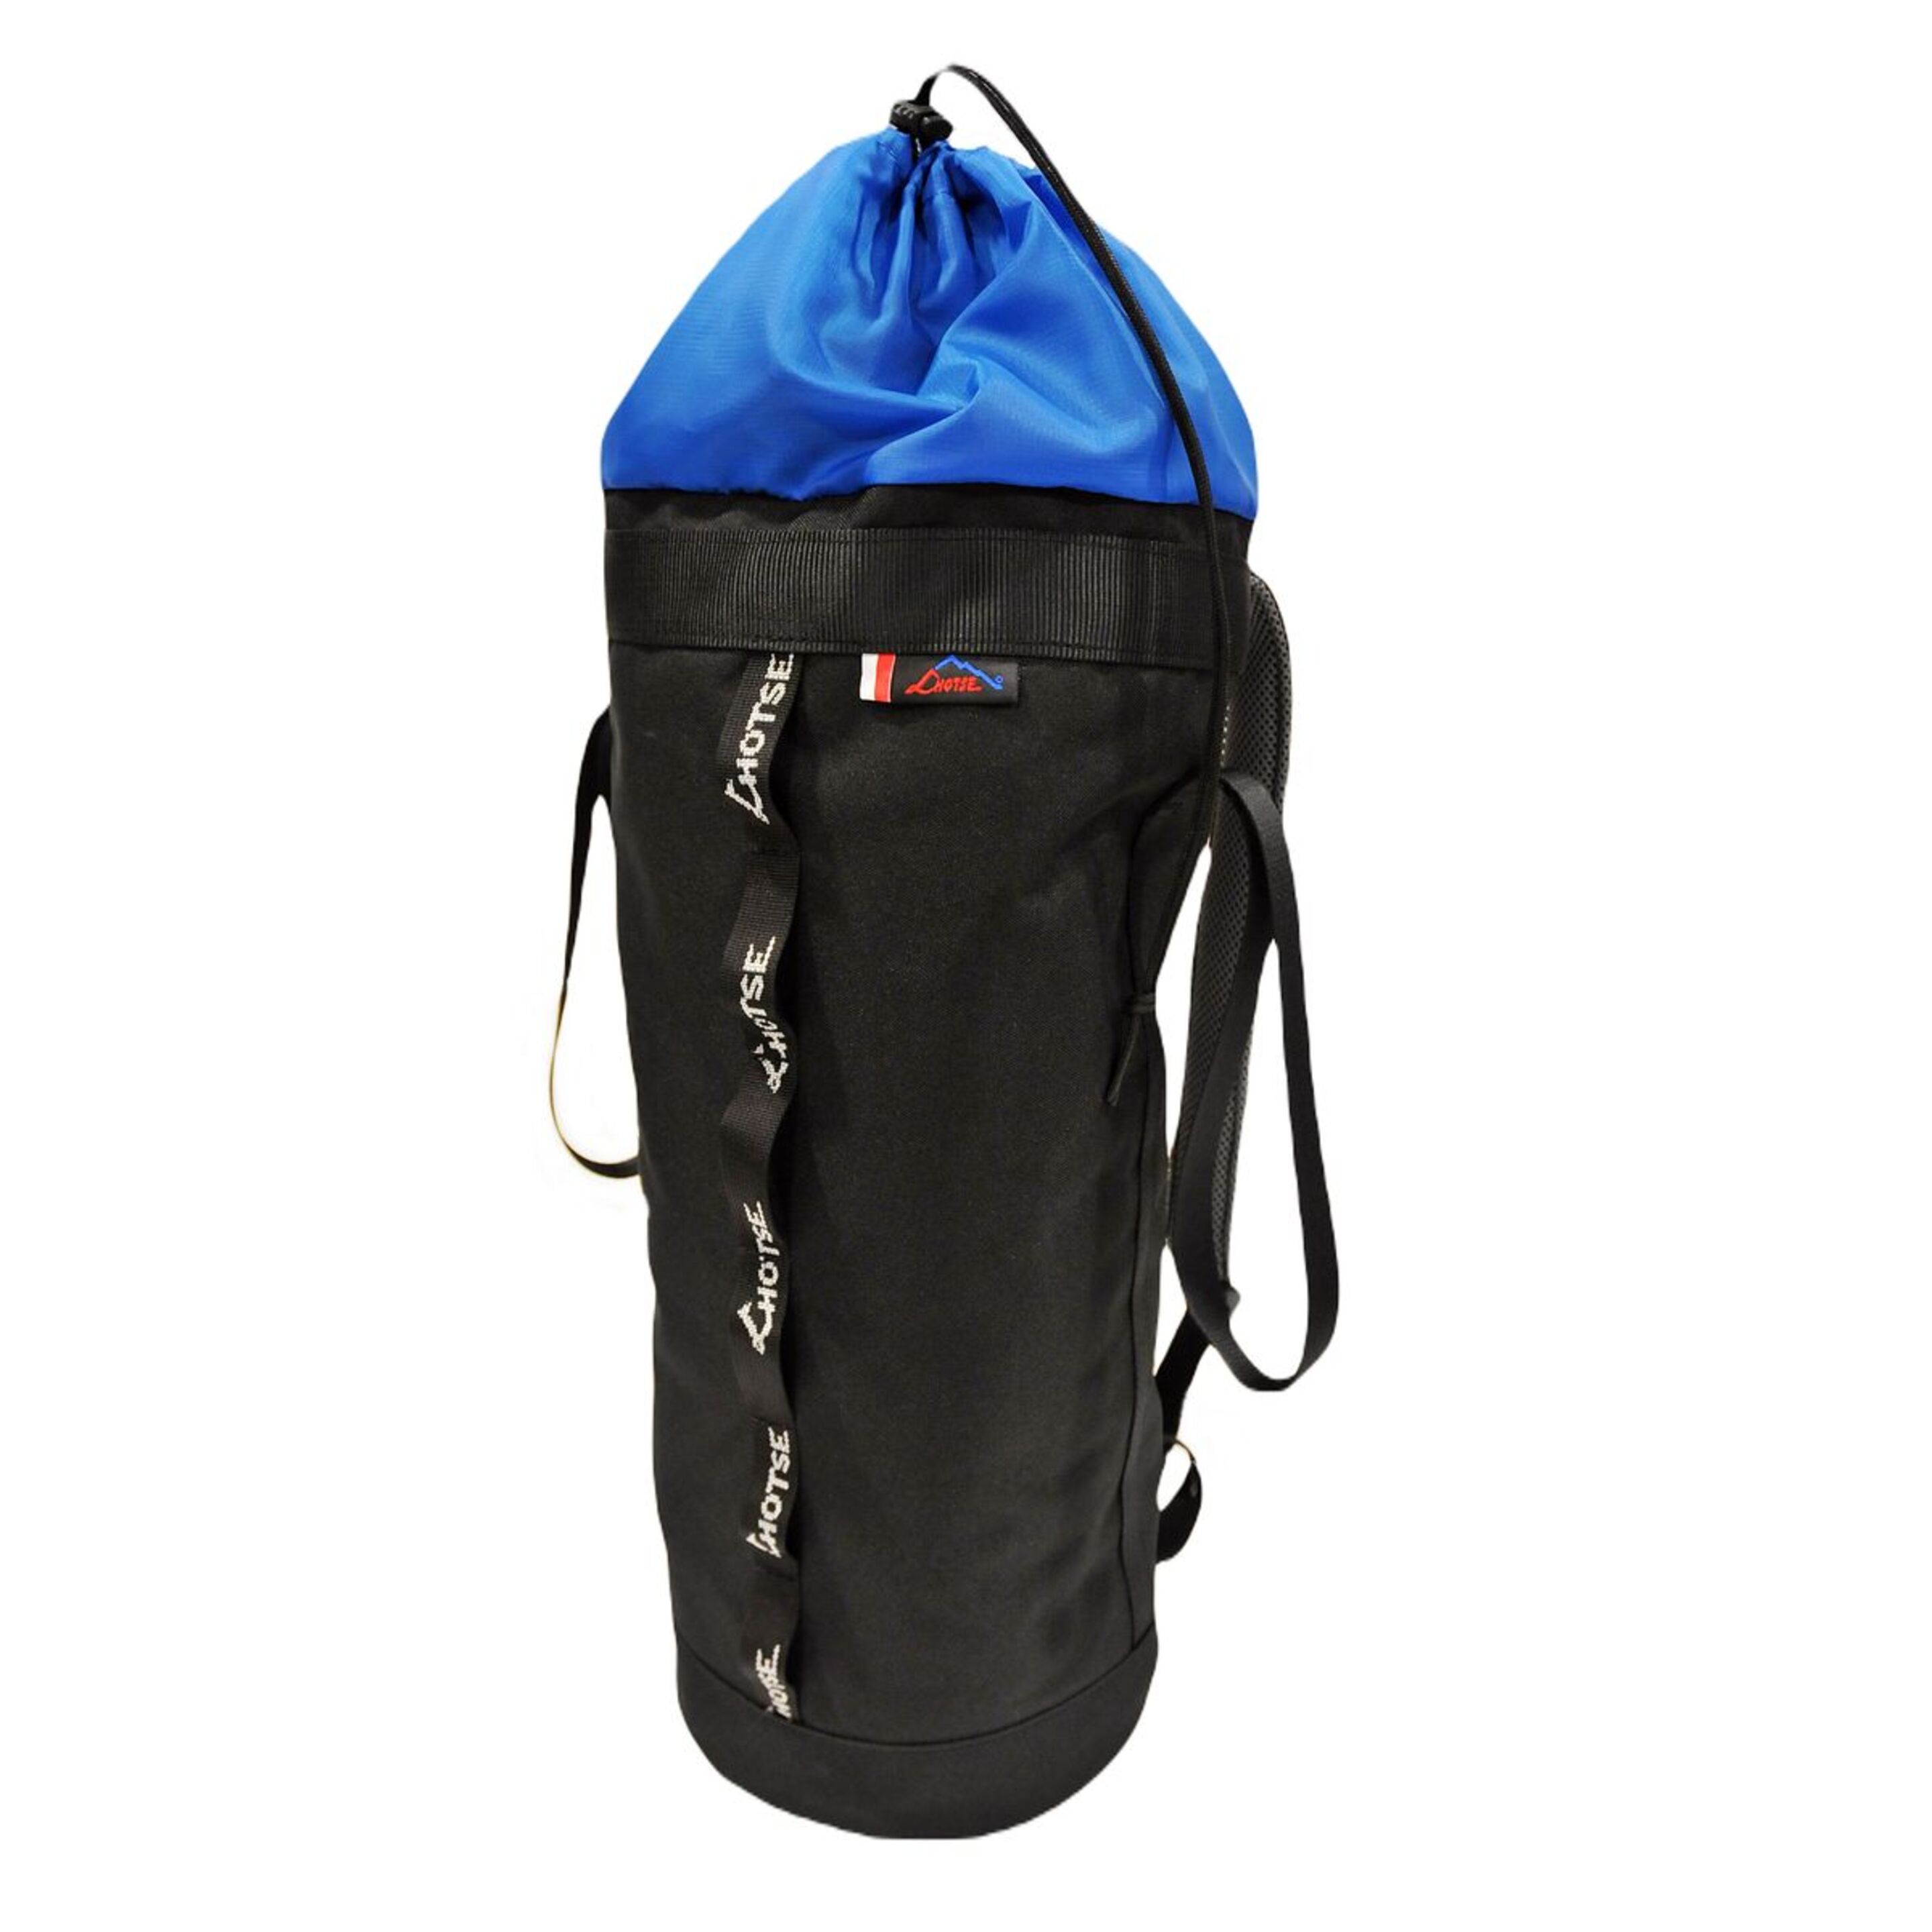 Bolsa Porta Cuerda Lhotse Rope Bag 20l - Negro/Azul  MKP